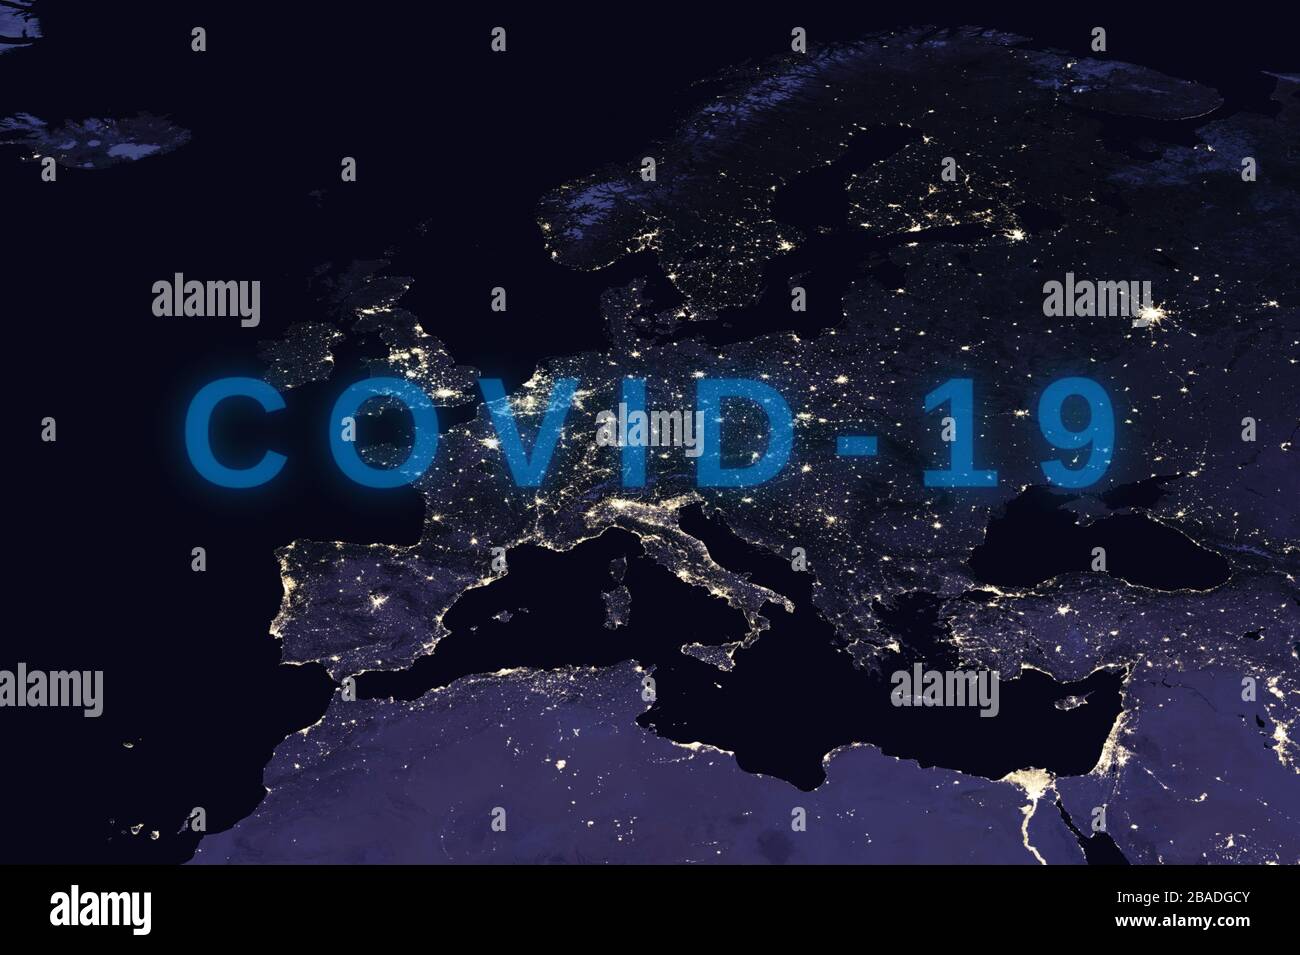 Coronavirus-Krankheit - glühendes COVID-19-Zeichen auf der Karte von europa - Elemente dieses Bildes, das von der NASA eingerichtet wurde Stockfoto